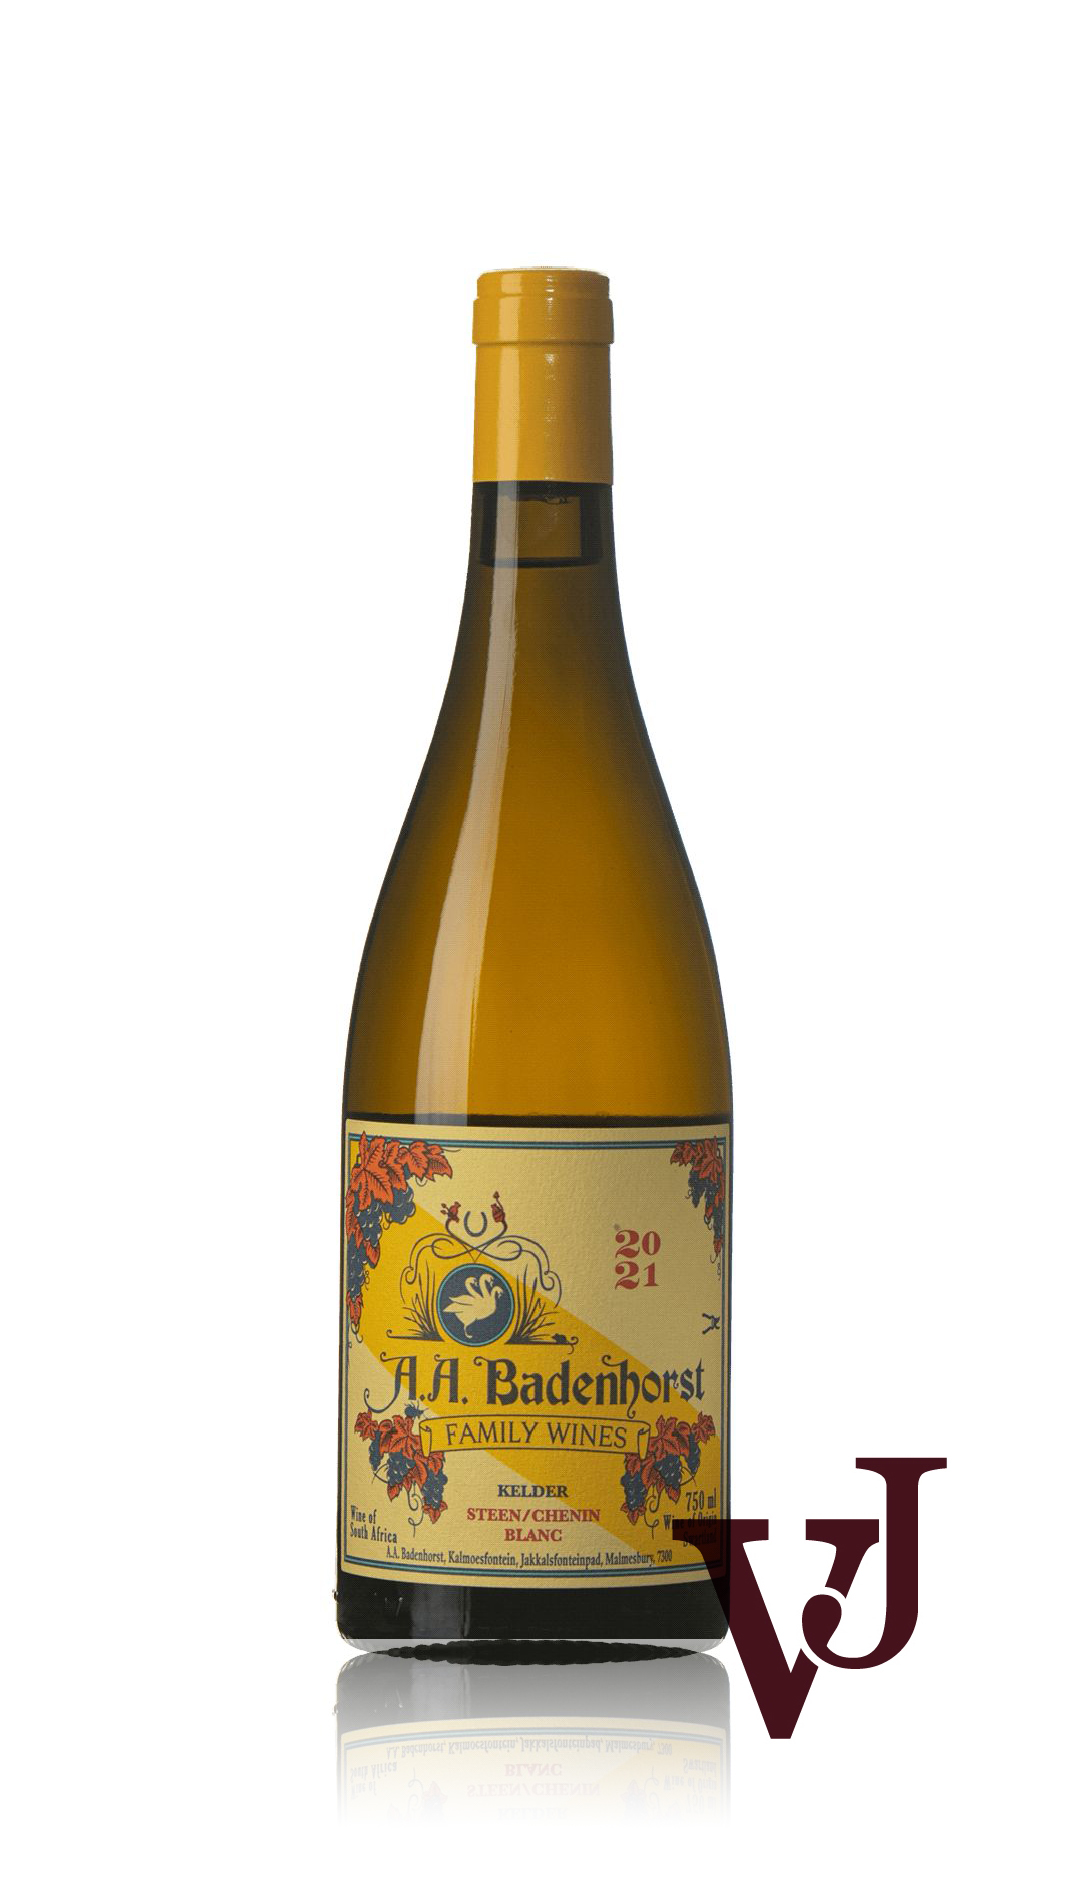 Vitt Vin - Kelder Steen artikel nummer 9357001 från producenten Badenhorst Family Wines från området Sydafrika